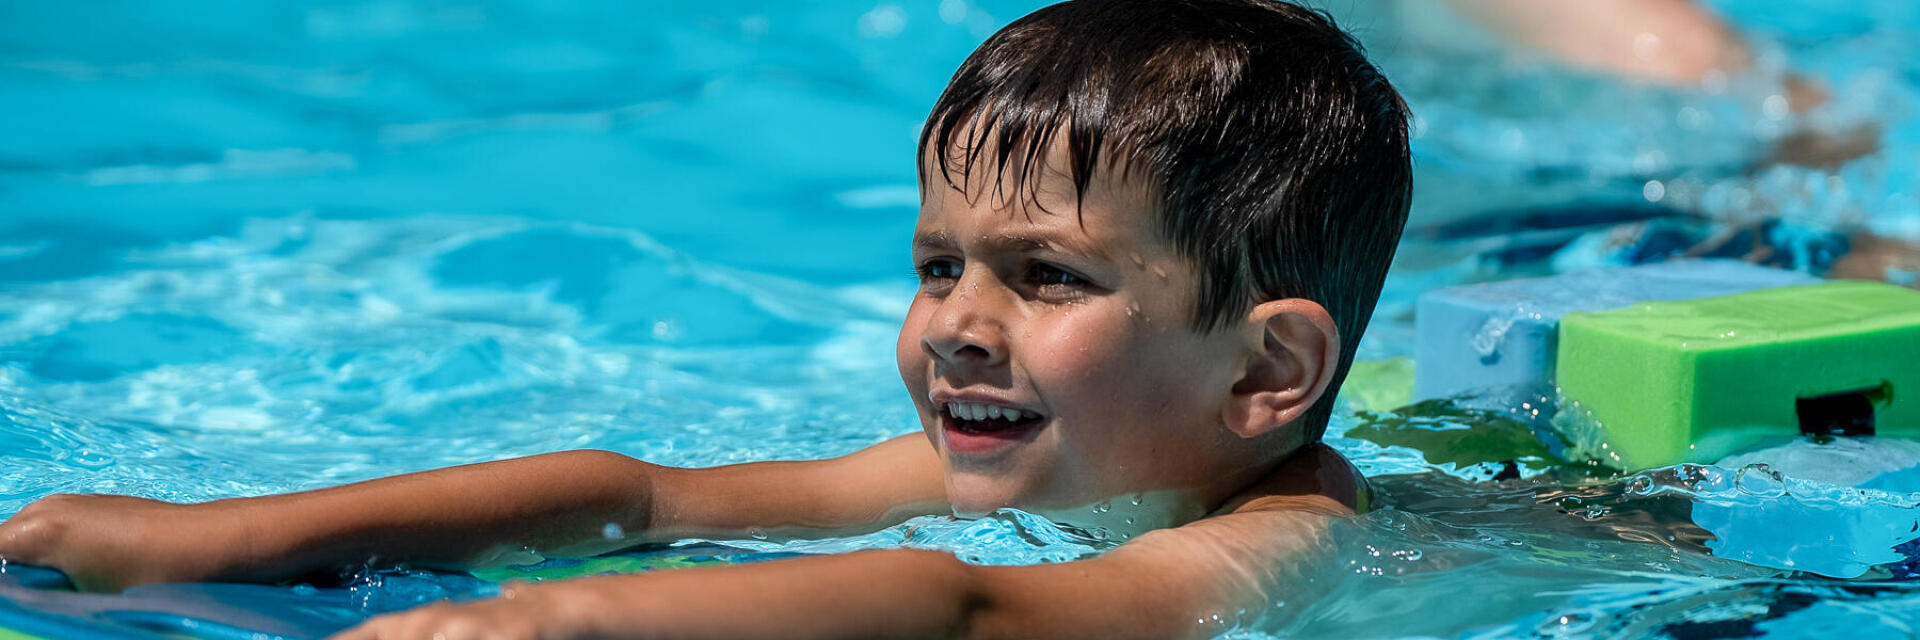 hygiene-a-la-piscine-comment-proteger-vos-enfants